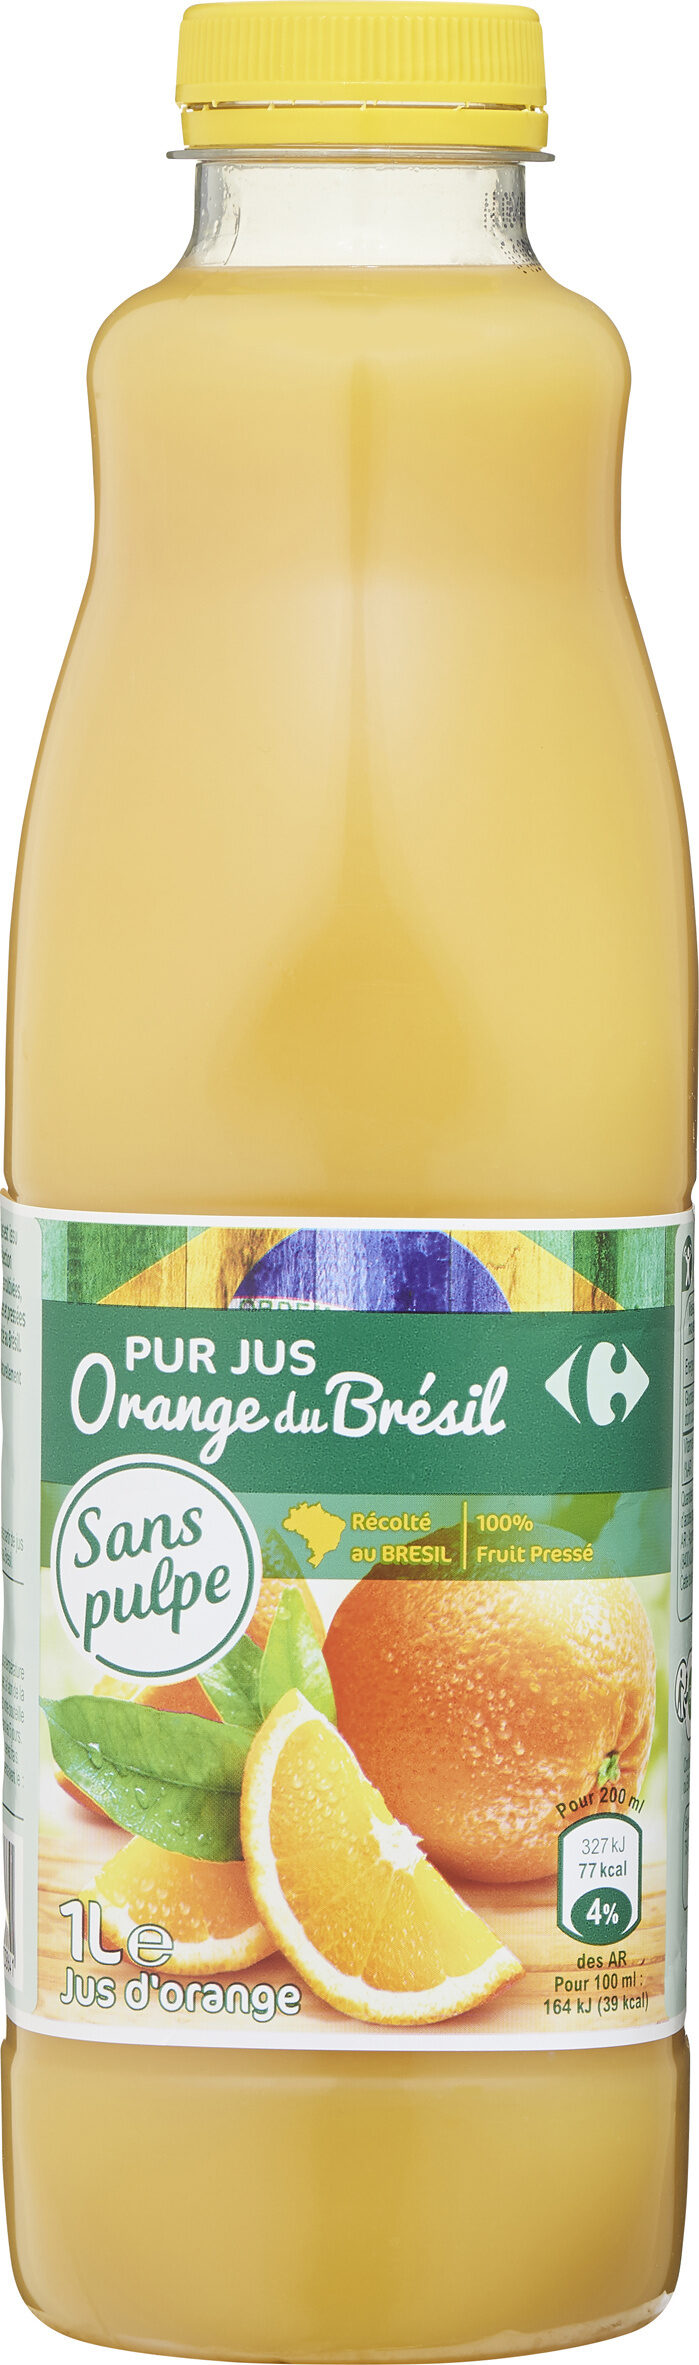 100% pur jus orange du brésil sans pulpe - Prodotto - fr